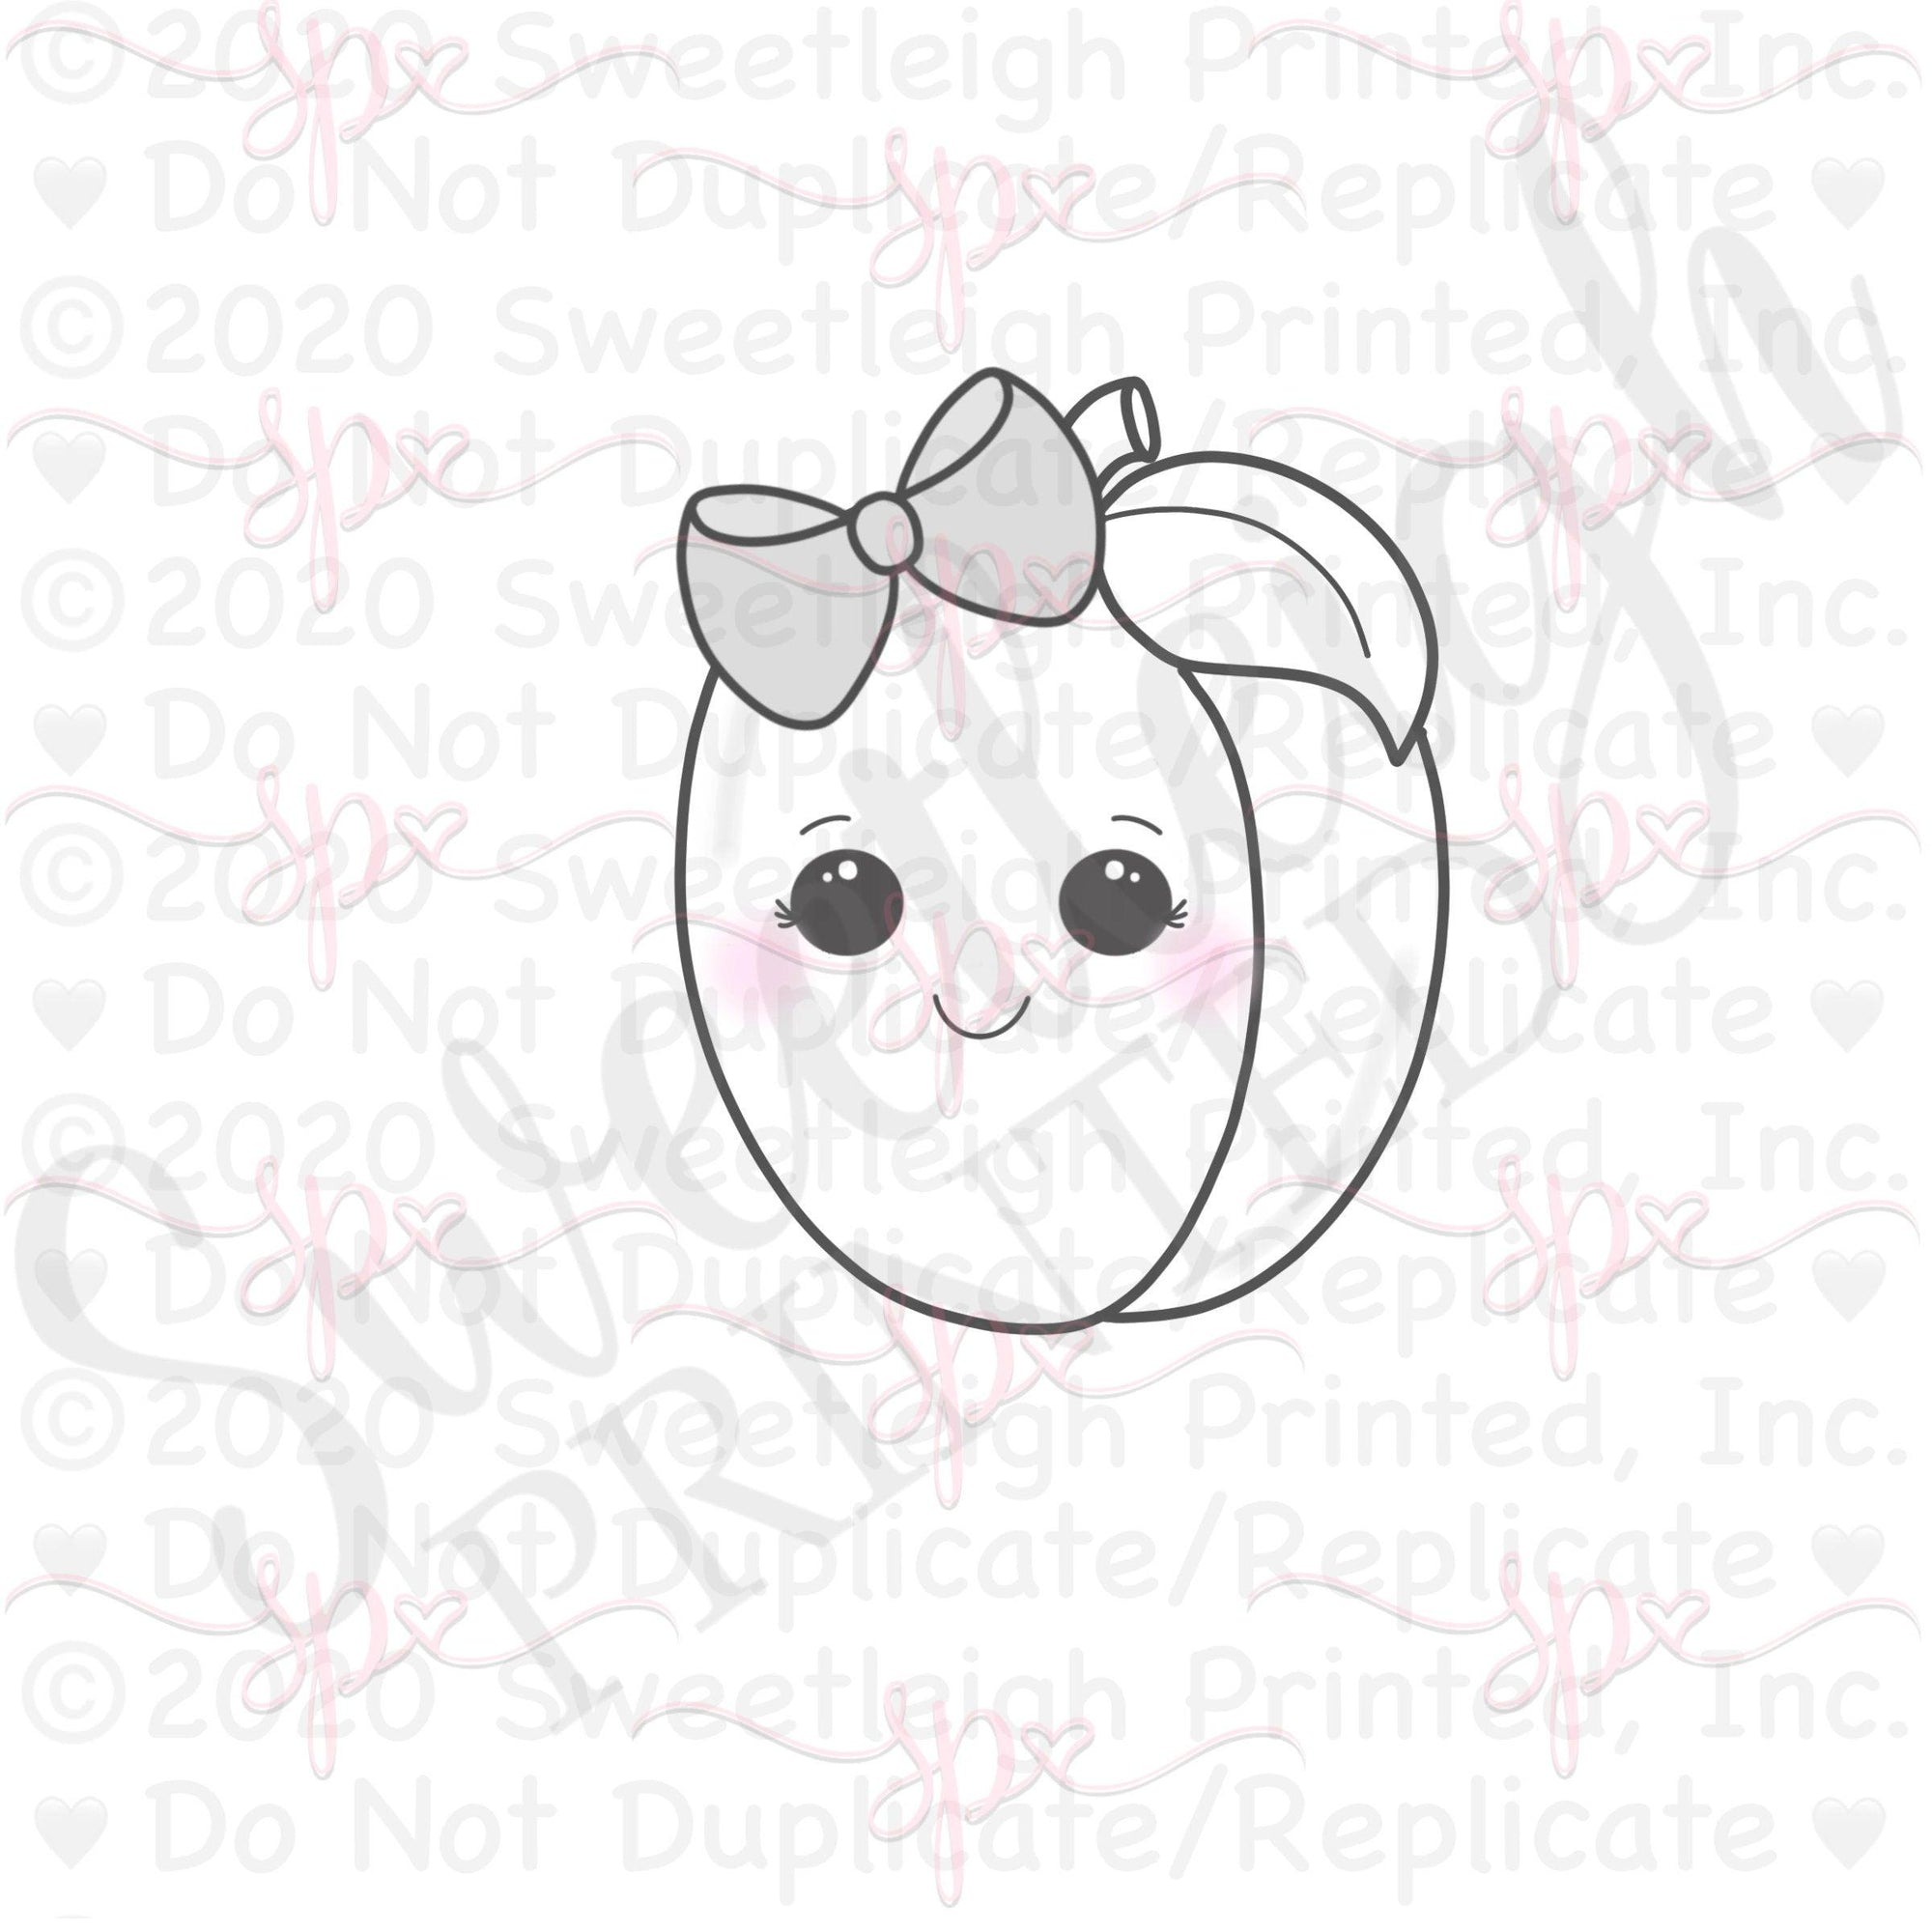 Girly Kawaii Plum 2020 Cookie Cutter - Sweetleigh 